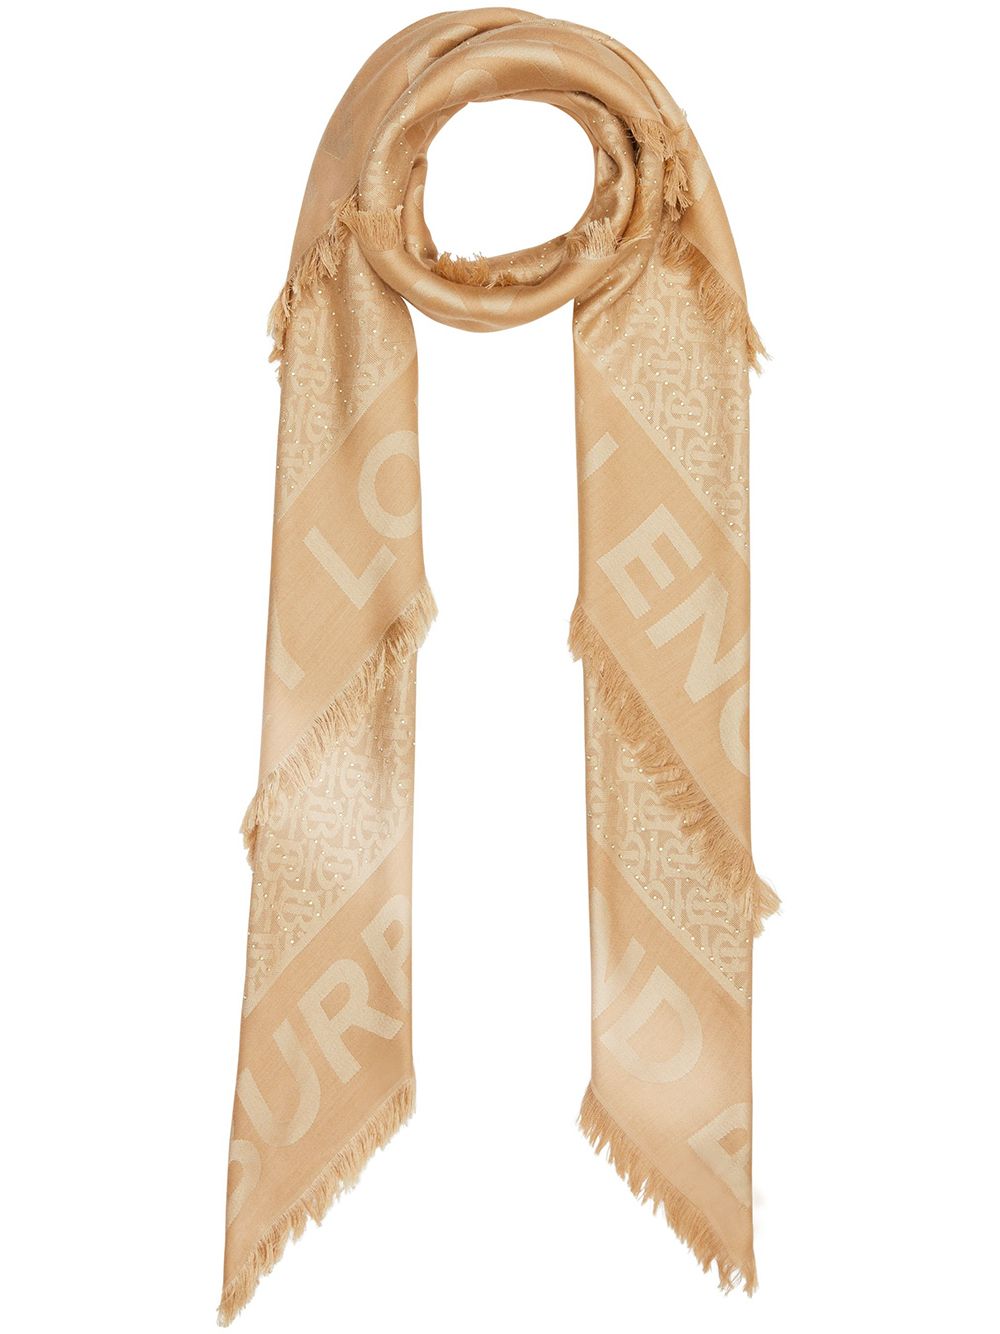 embellished scarf